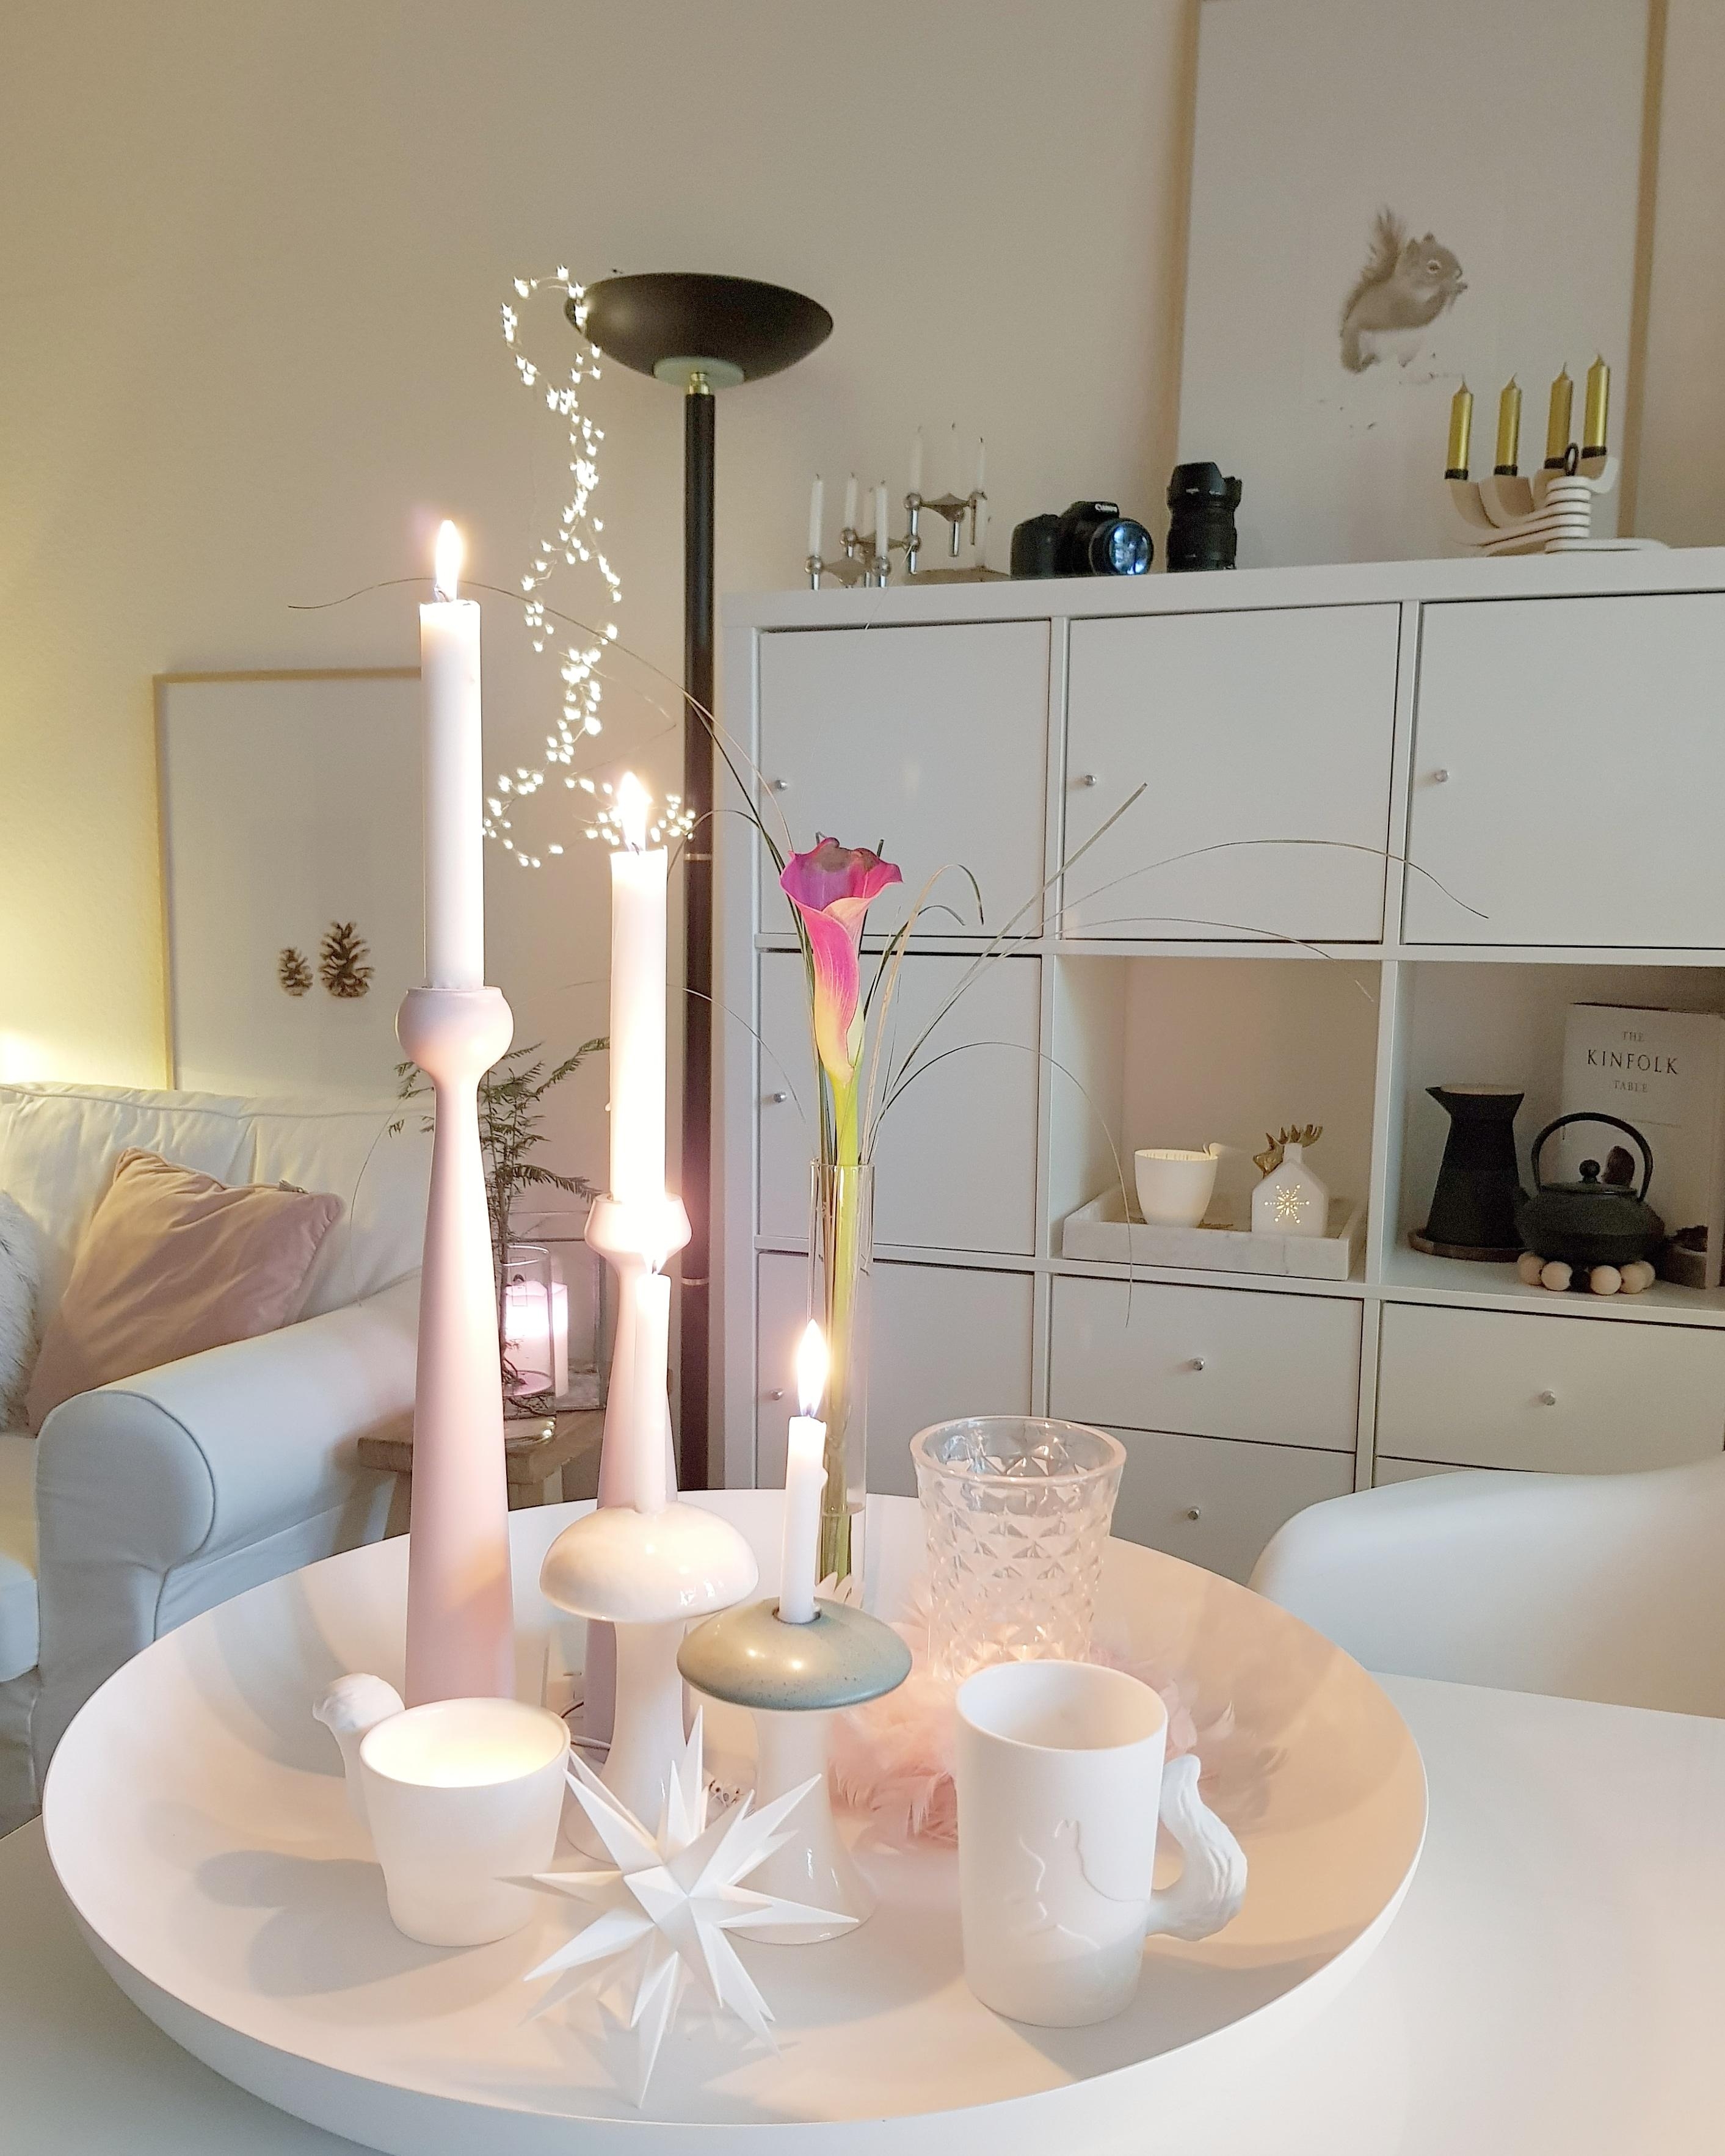 früh dunkel da hilft nur Kerzenschein 🕯🕯🕯 #wohnen #50qm #ottensen #whiteliving #wohnzimmer 